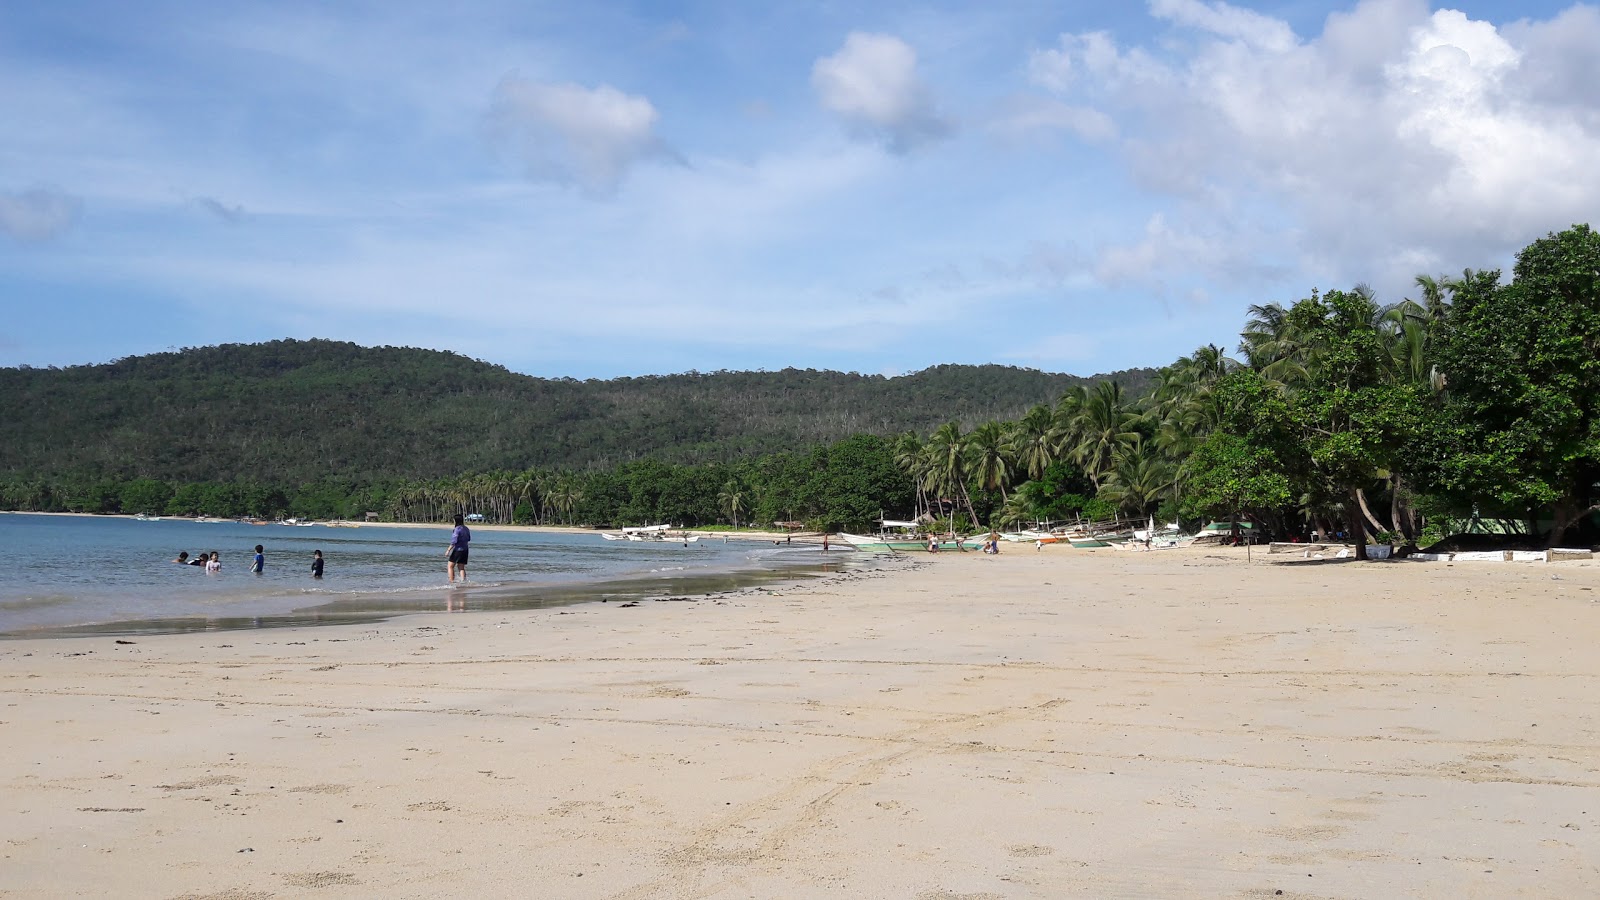 Foto di Tagcawayan Beach con una superficie del sabbia fine e luminosa